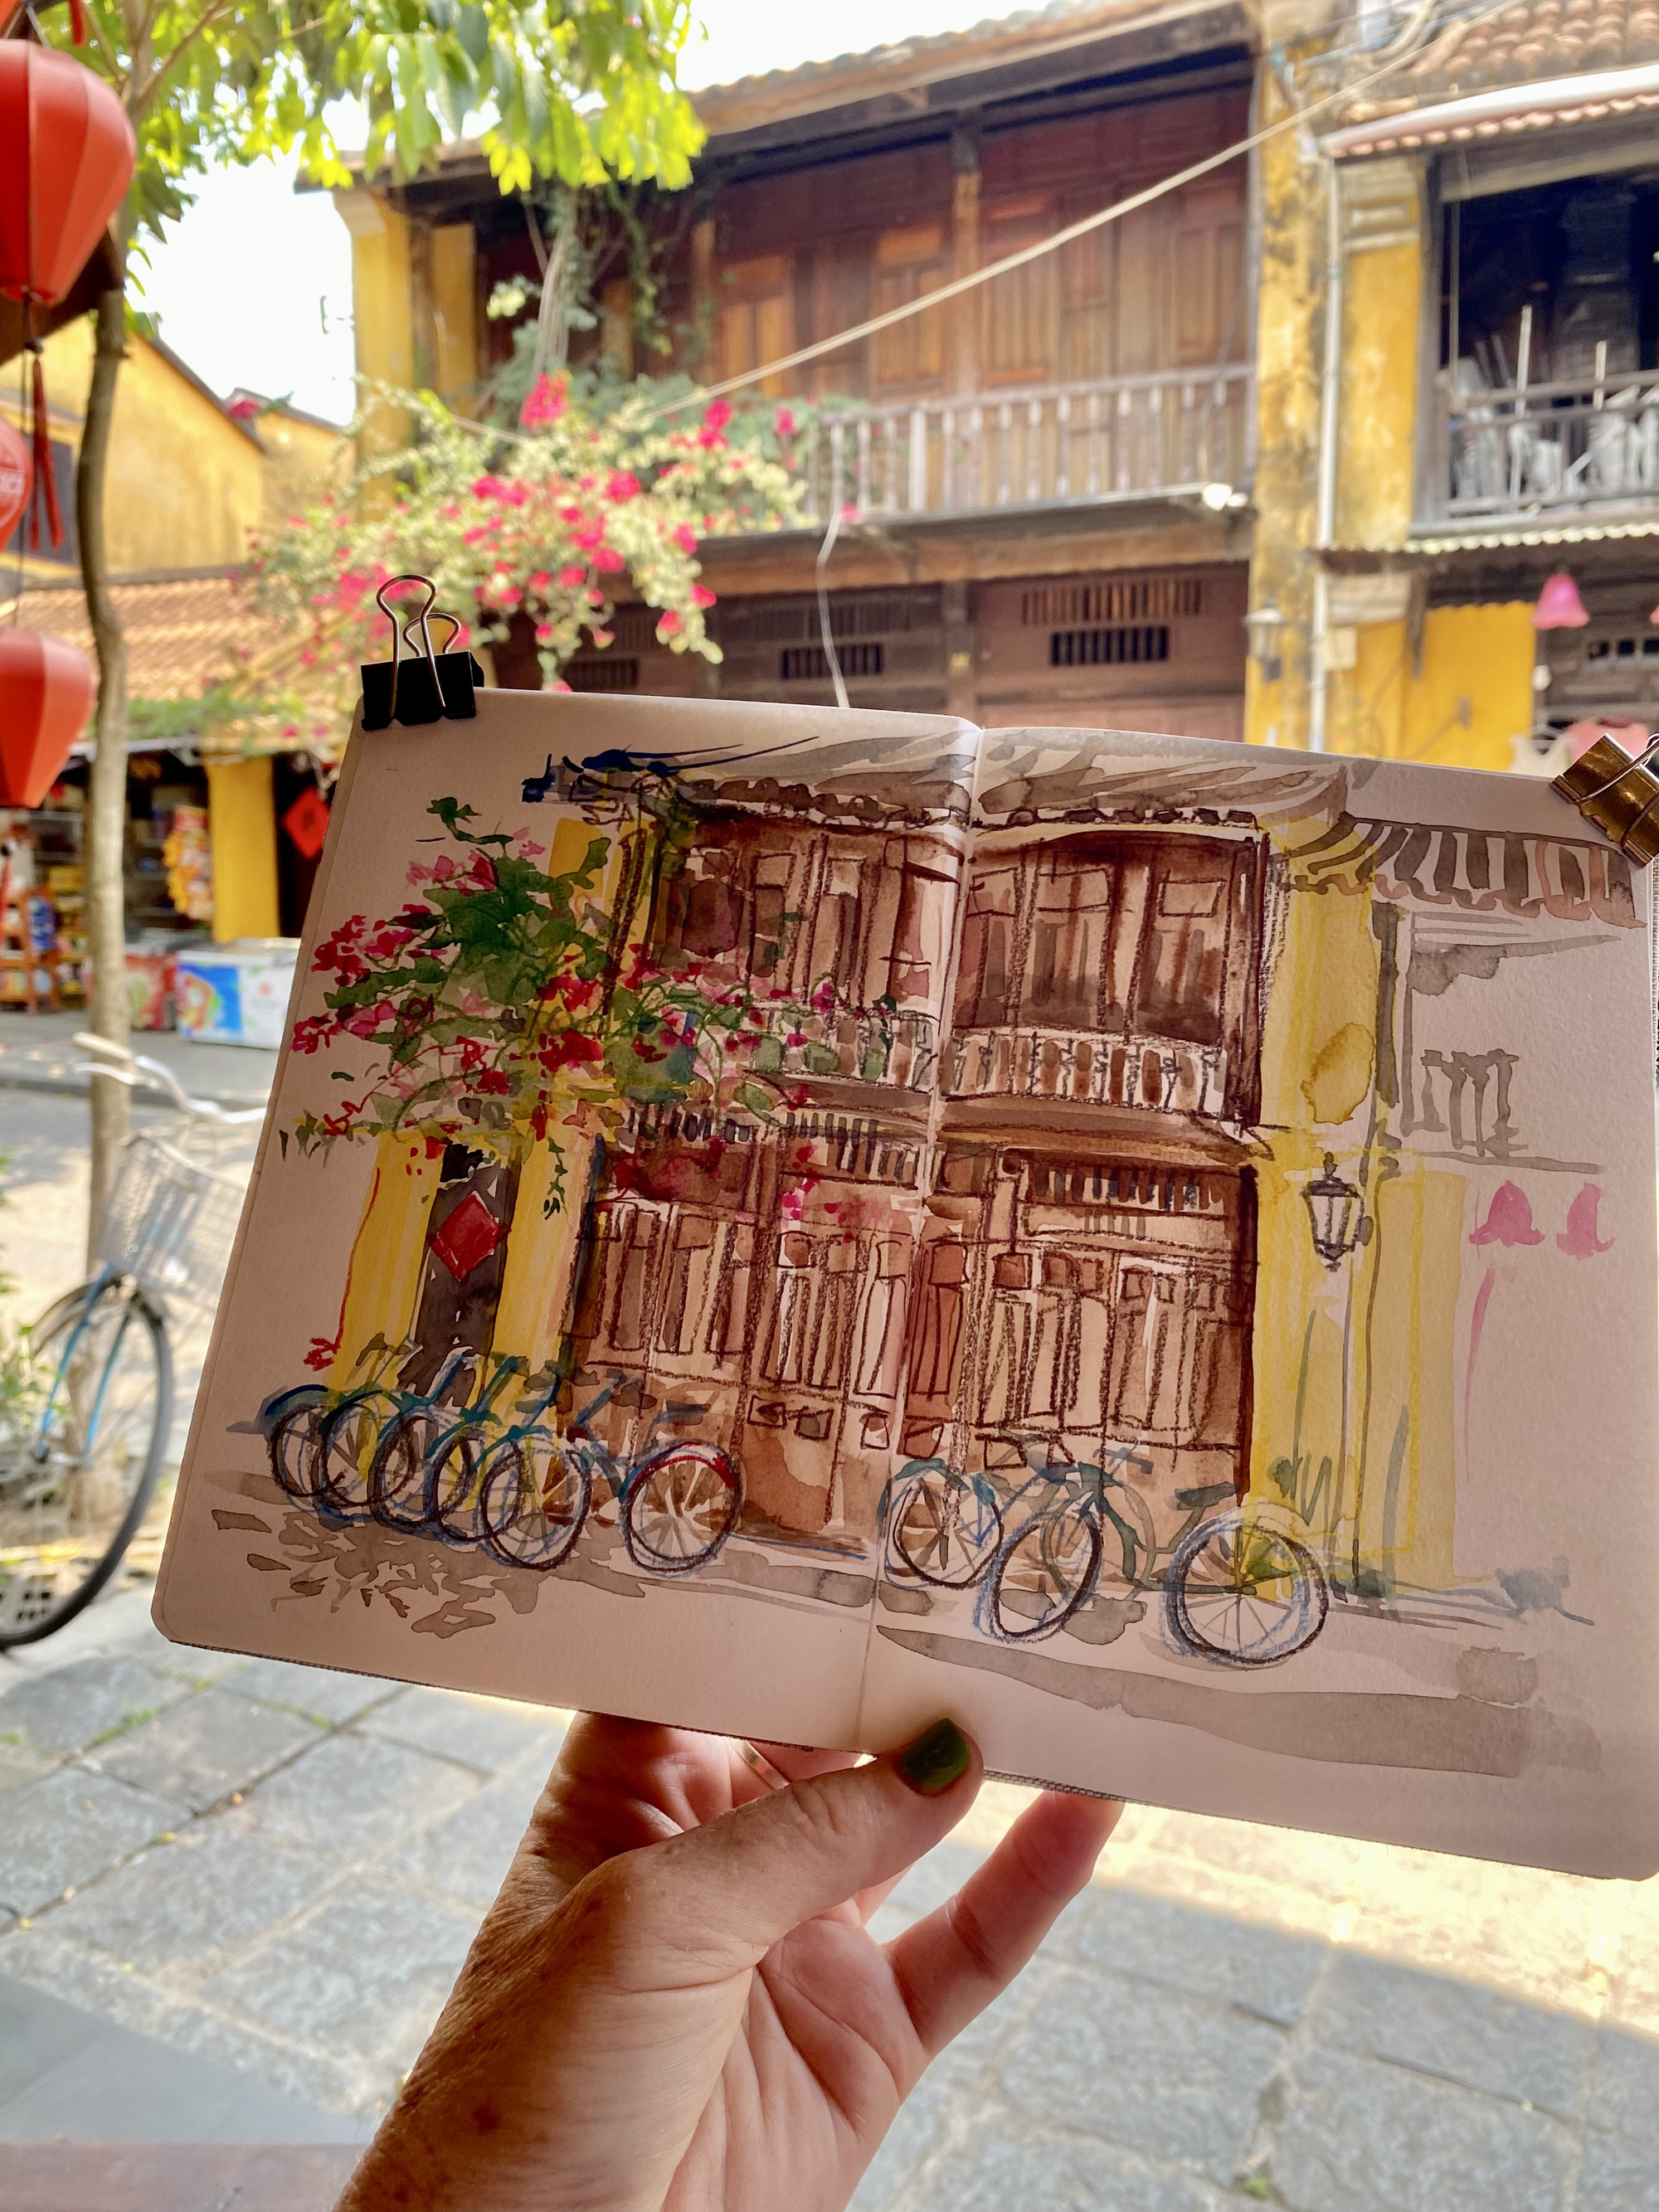 Australian art teacher recalls happy visit to Vietnam in sketches